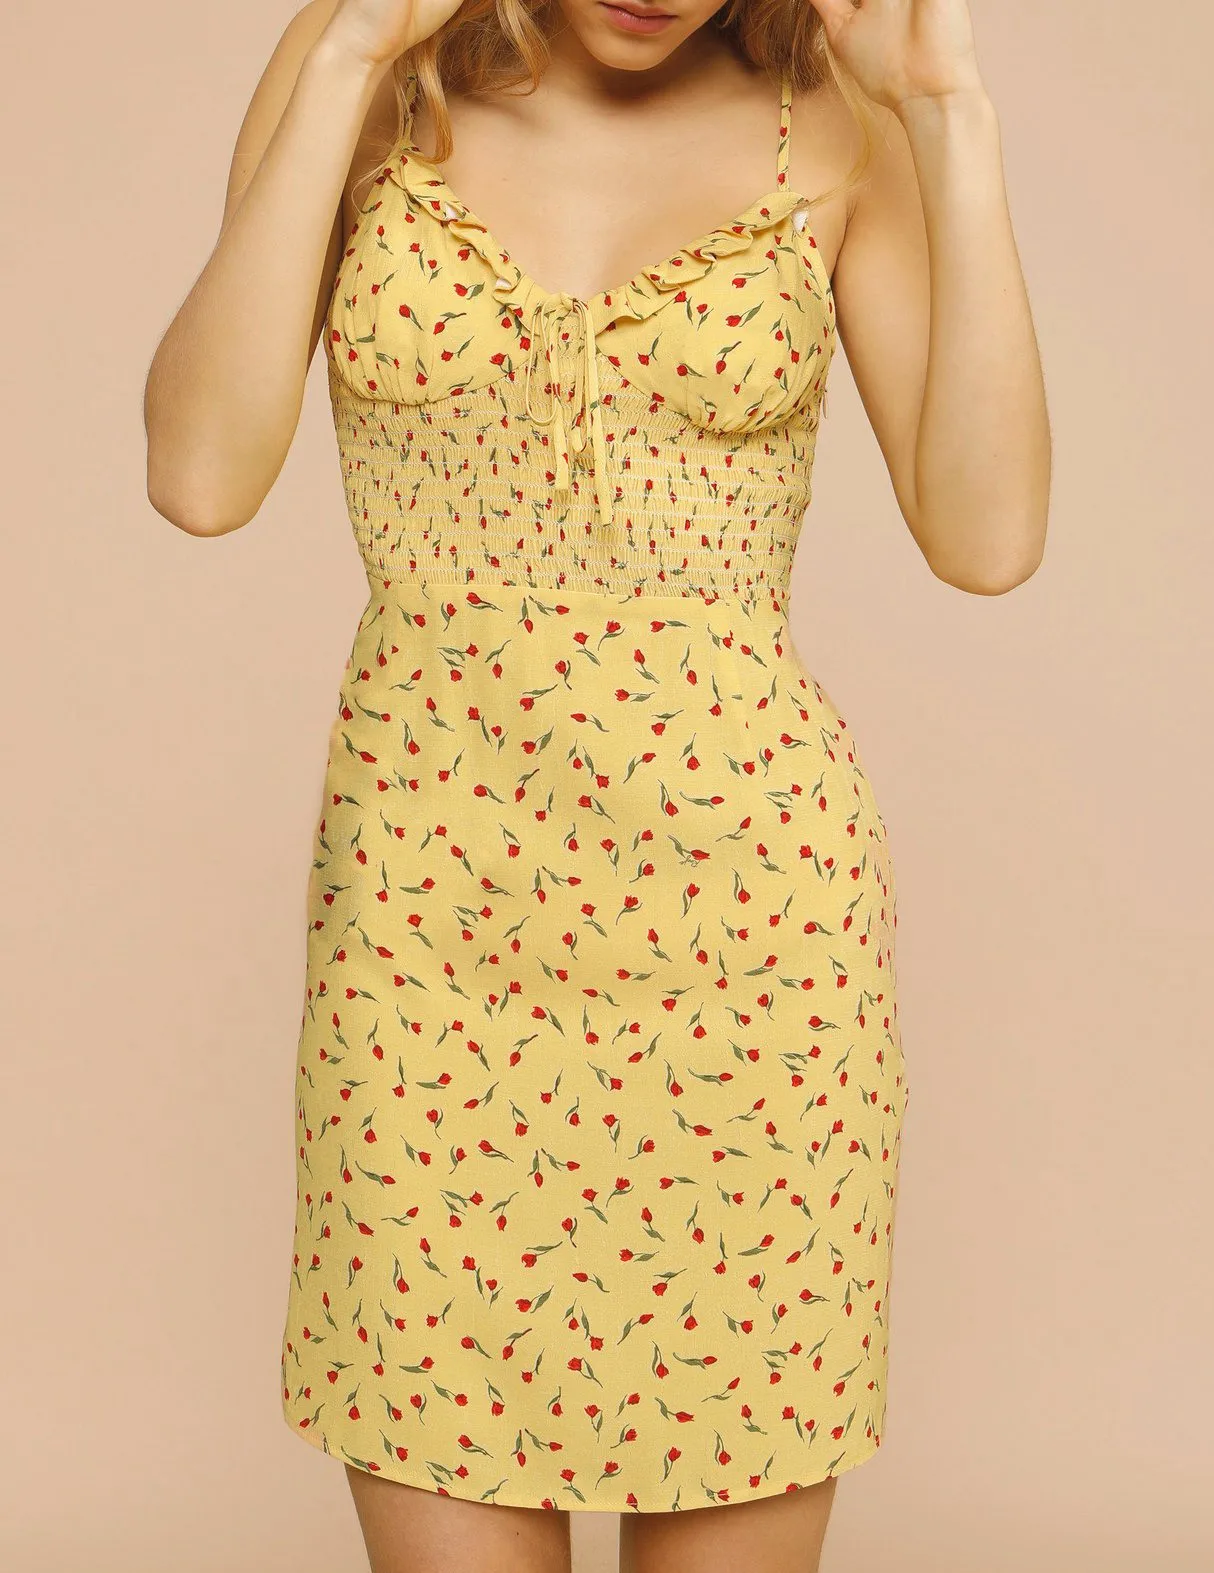 

Женское платье на бретельках, универсальное облегающее платье с V-образным вырезом и цветочным принтом в виде листьев лотоса, весна-лето 2021